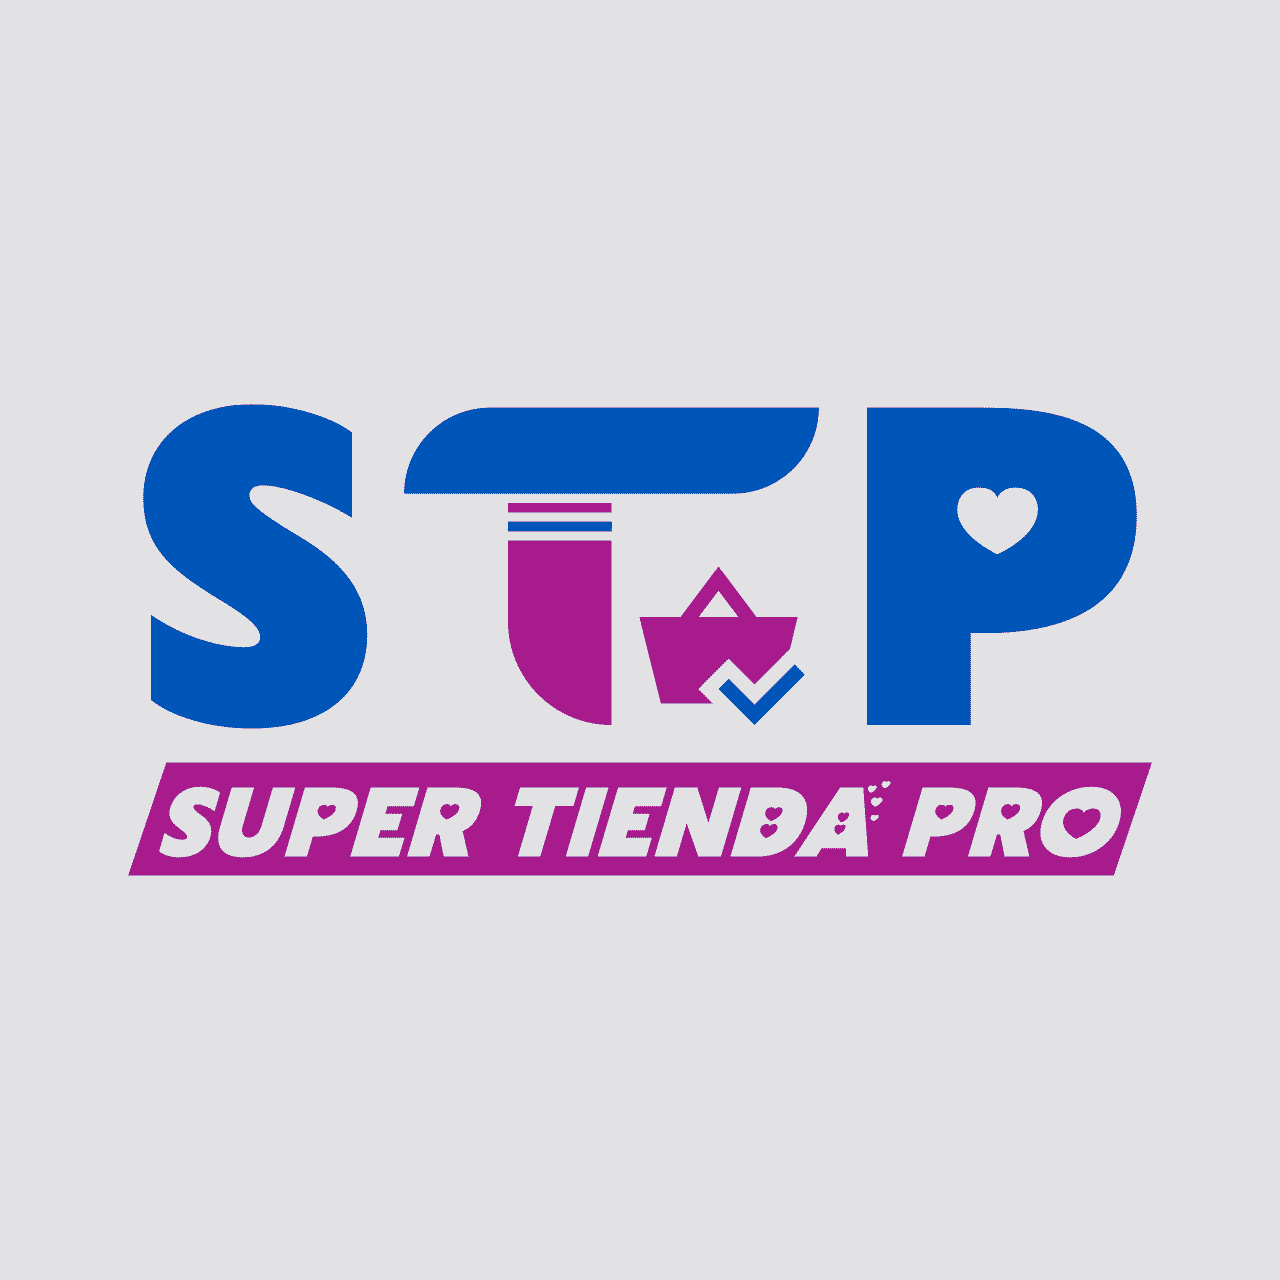 Super Tienda Pro